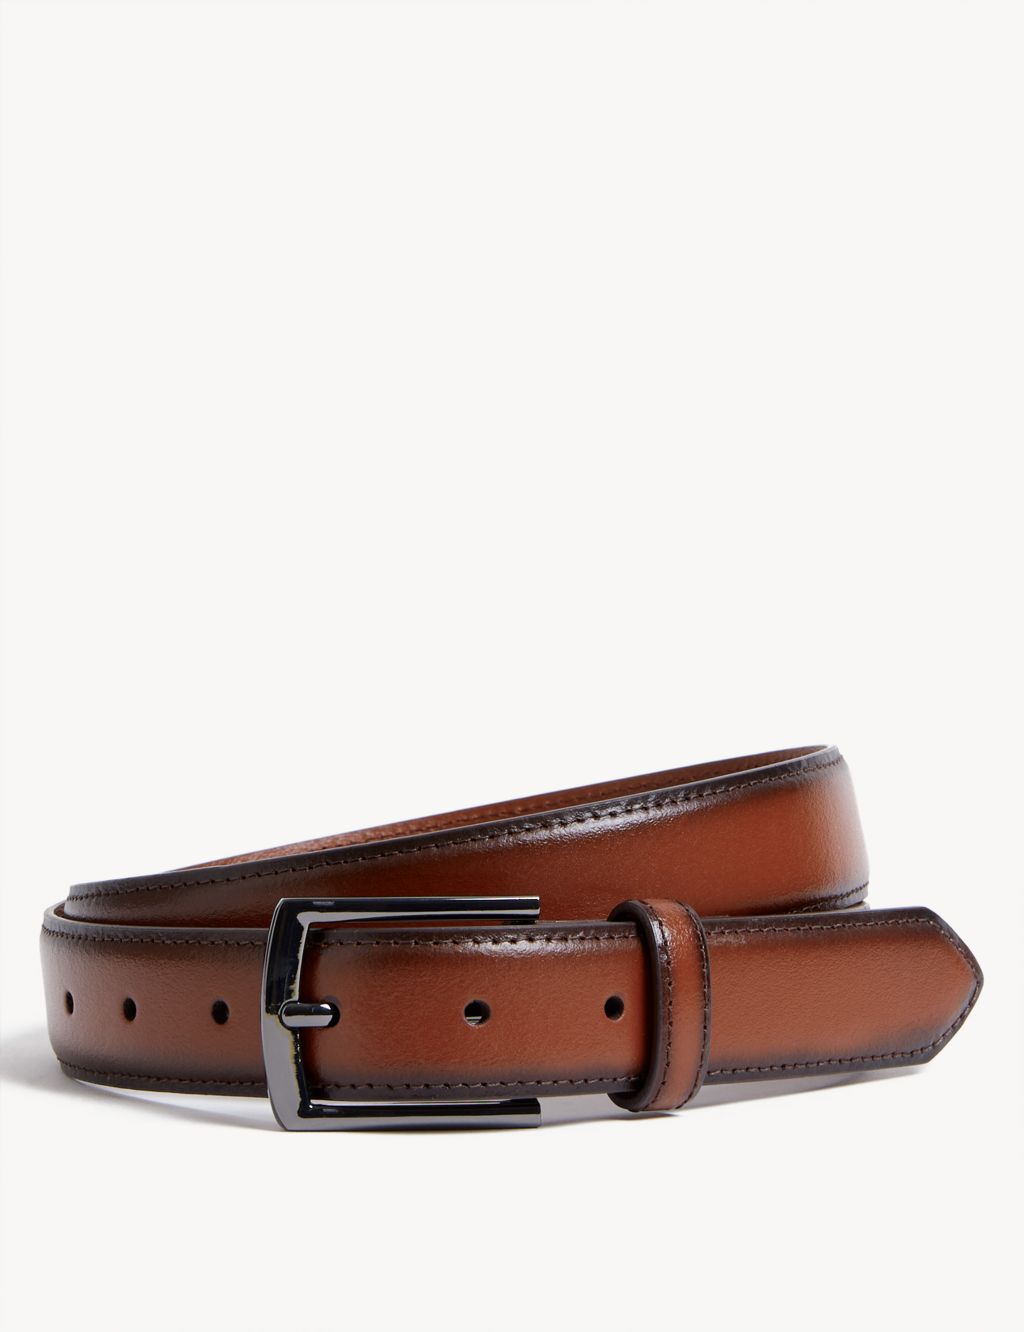 Leather Smart Belt image 1